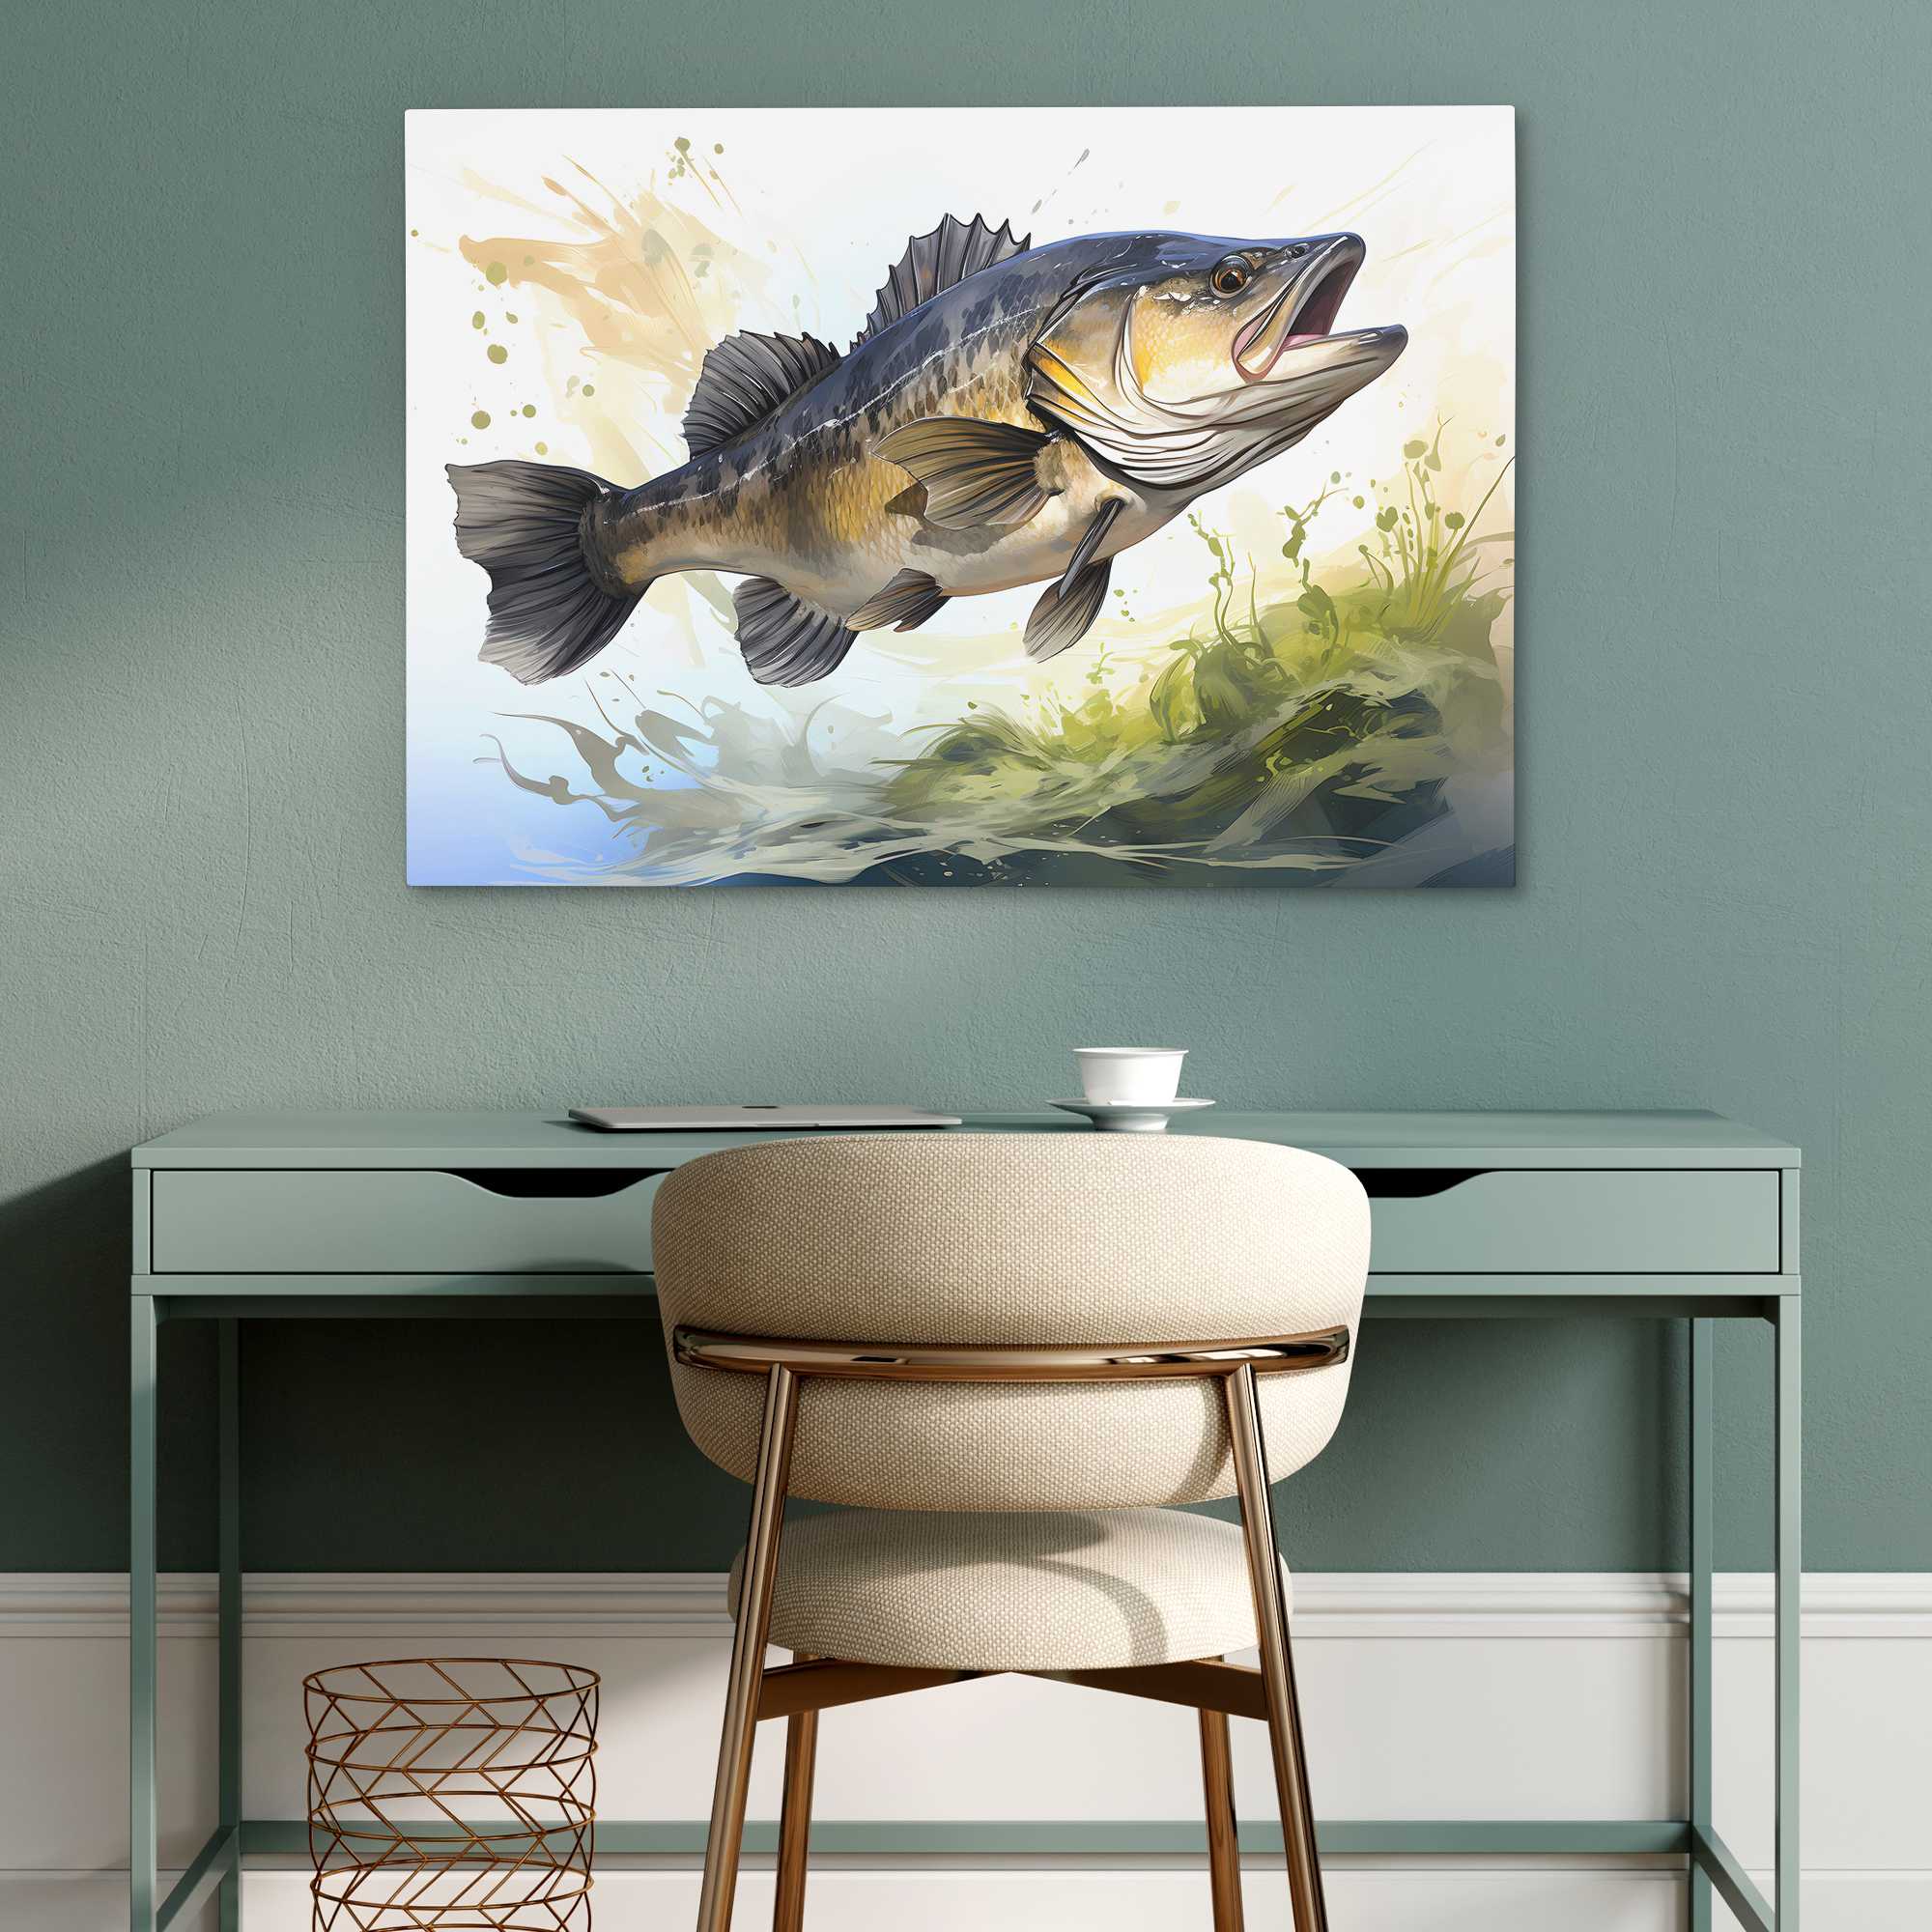 Bass Fishing Luxury Art Lake House